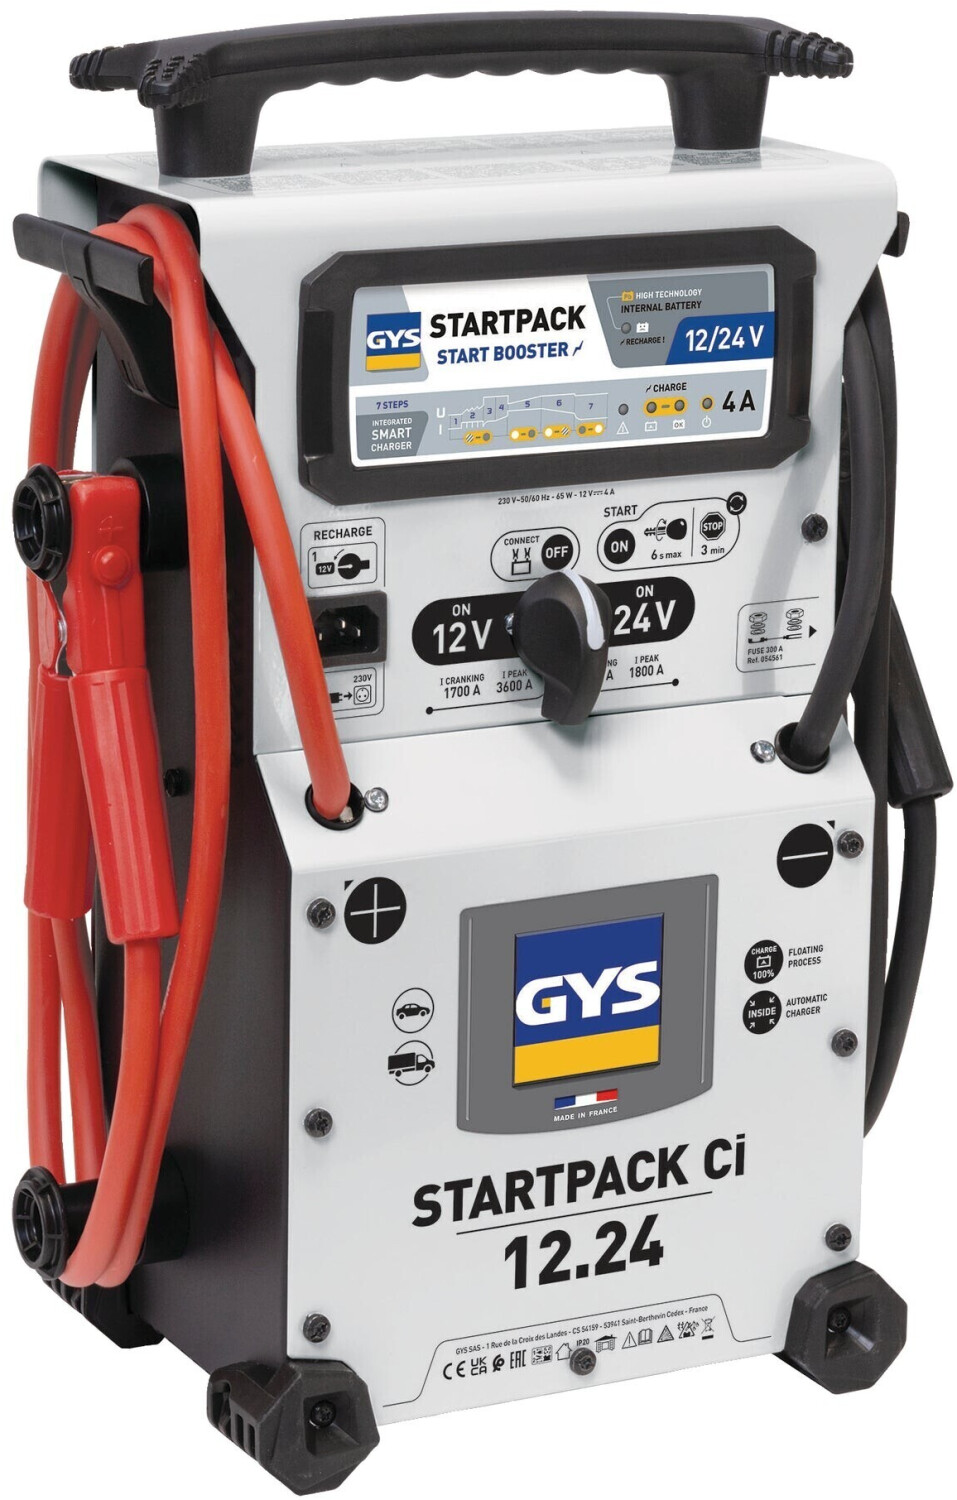 GYS STARTPACK 12.24 CI (024991) au meilleur prix sur